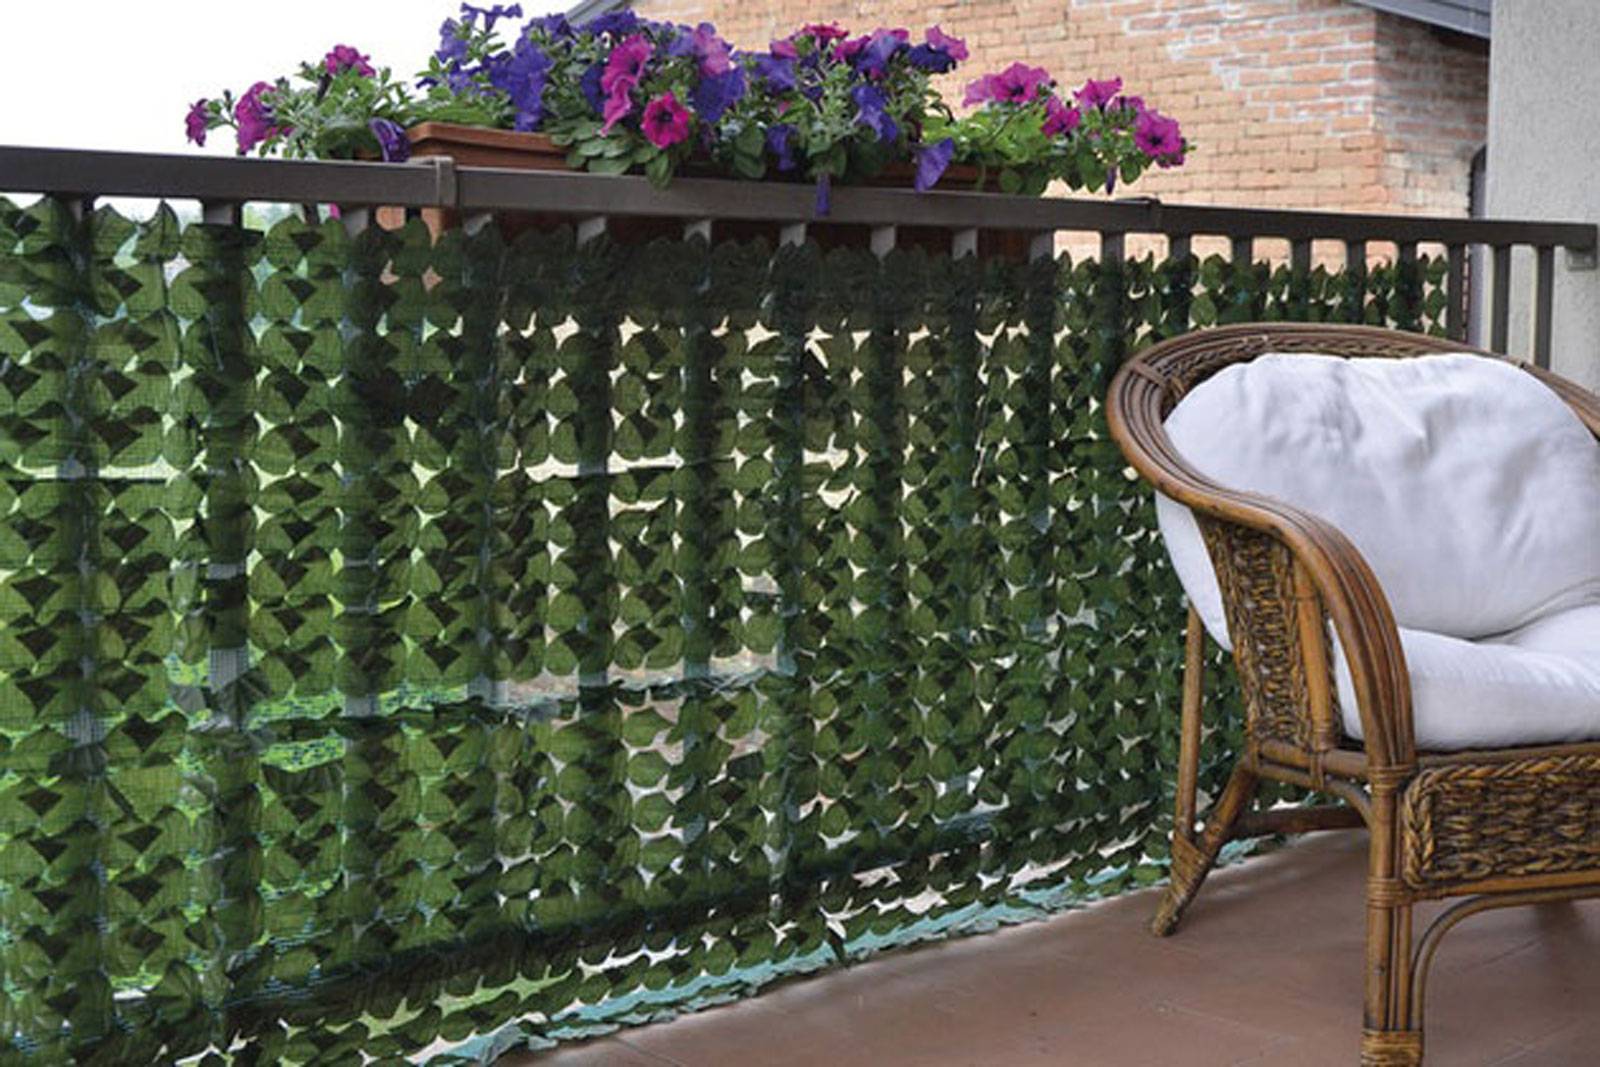 Finta edera foglia recinzione 300x50cm siepi artificiali pannello privacy  recinzione schermo per giardino esterno patio portico terrazza balcone  decorazione